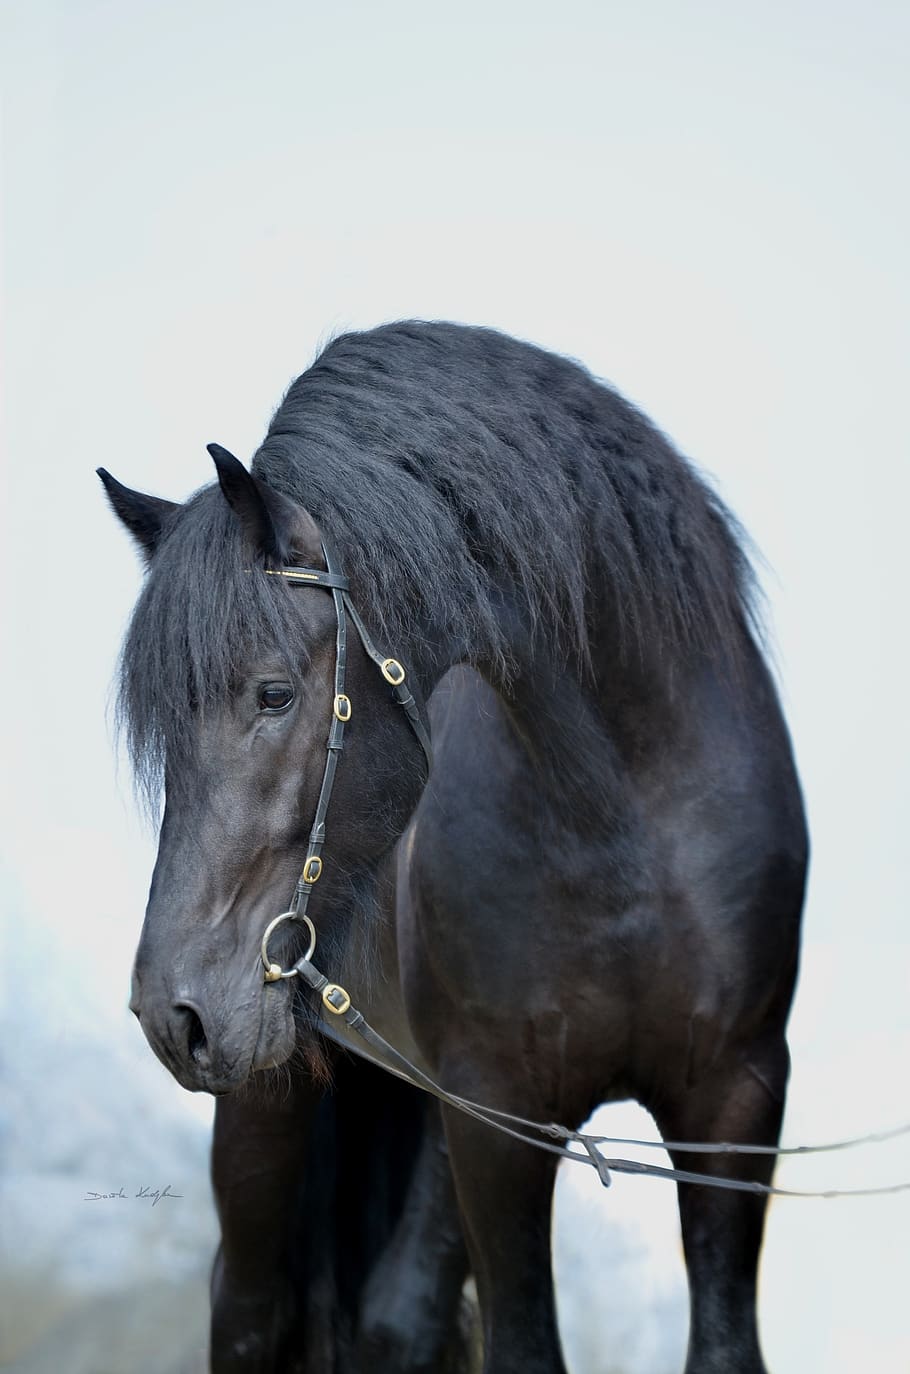 лошадь, лошади, черная лошадь, фрезийская, фрезийская лошадь, теплокровная, портрет лошади, жеребец, грива, красота